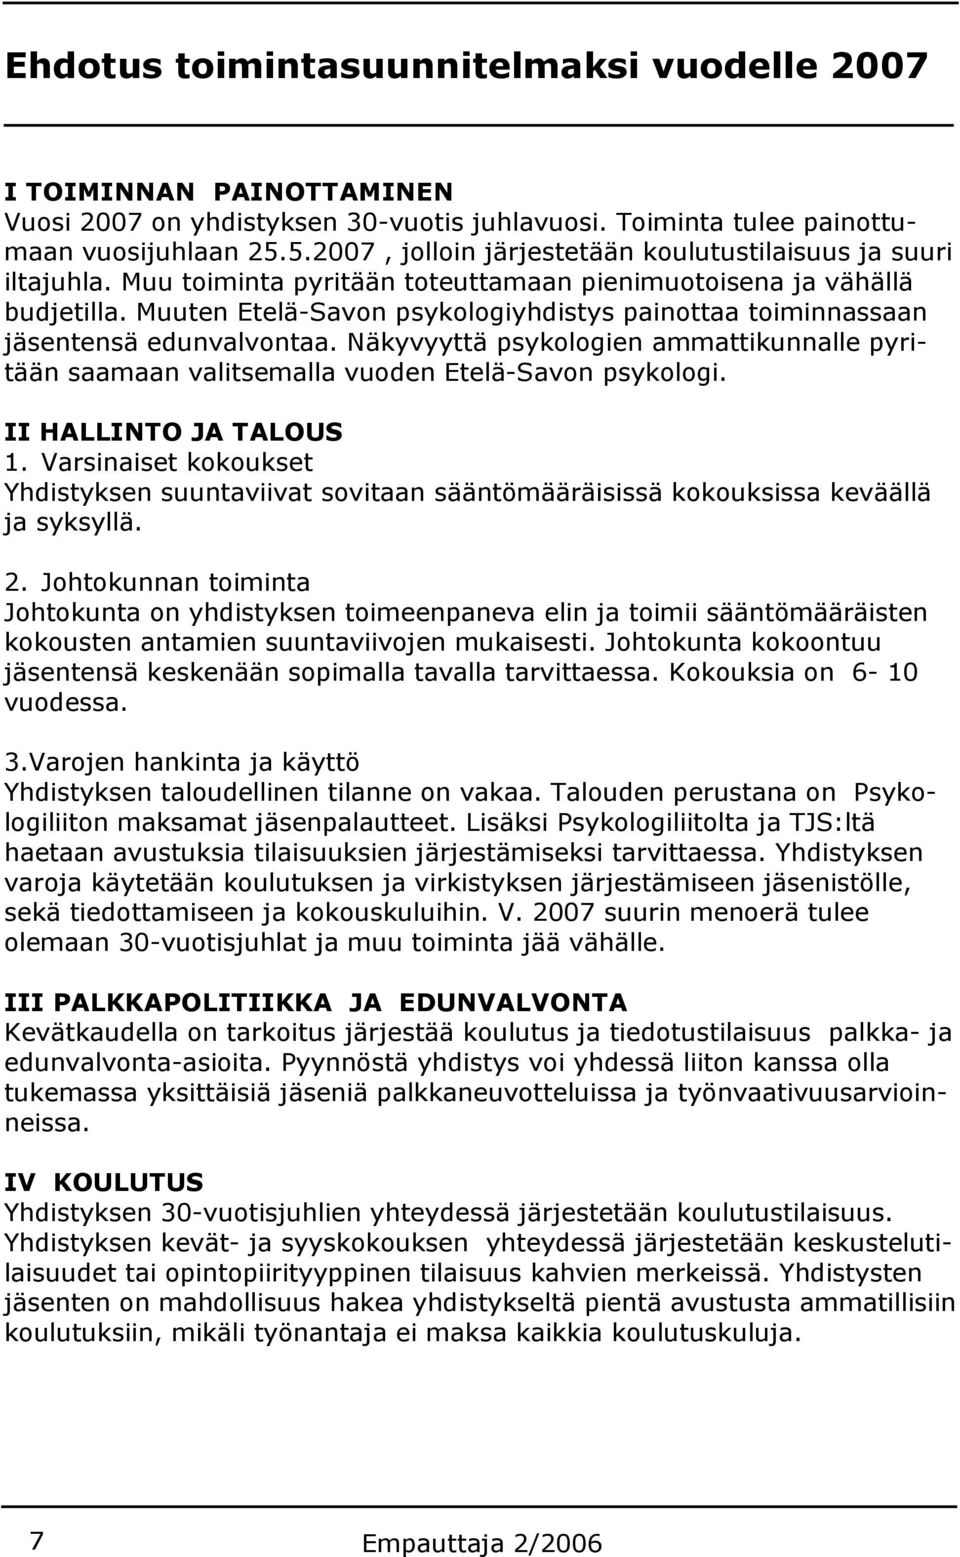 Muuten Etelä-Savon psykologiyhdistys painottaa toiminnassaan jäsentensä edunvalvontaa. Näkyvyyttä psykologien ammattikunnalle pyritään saamaan valitsemalla vuoden Etelä-Savon psykologi.